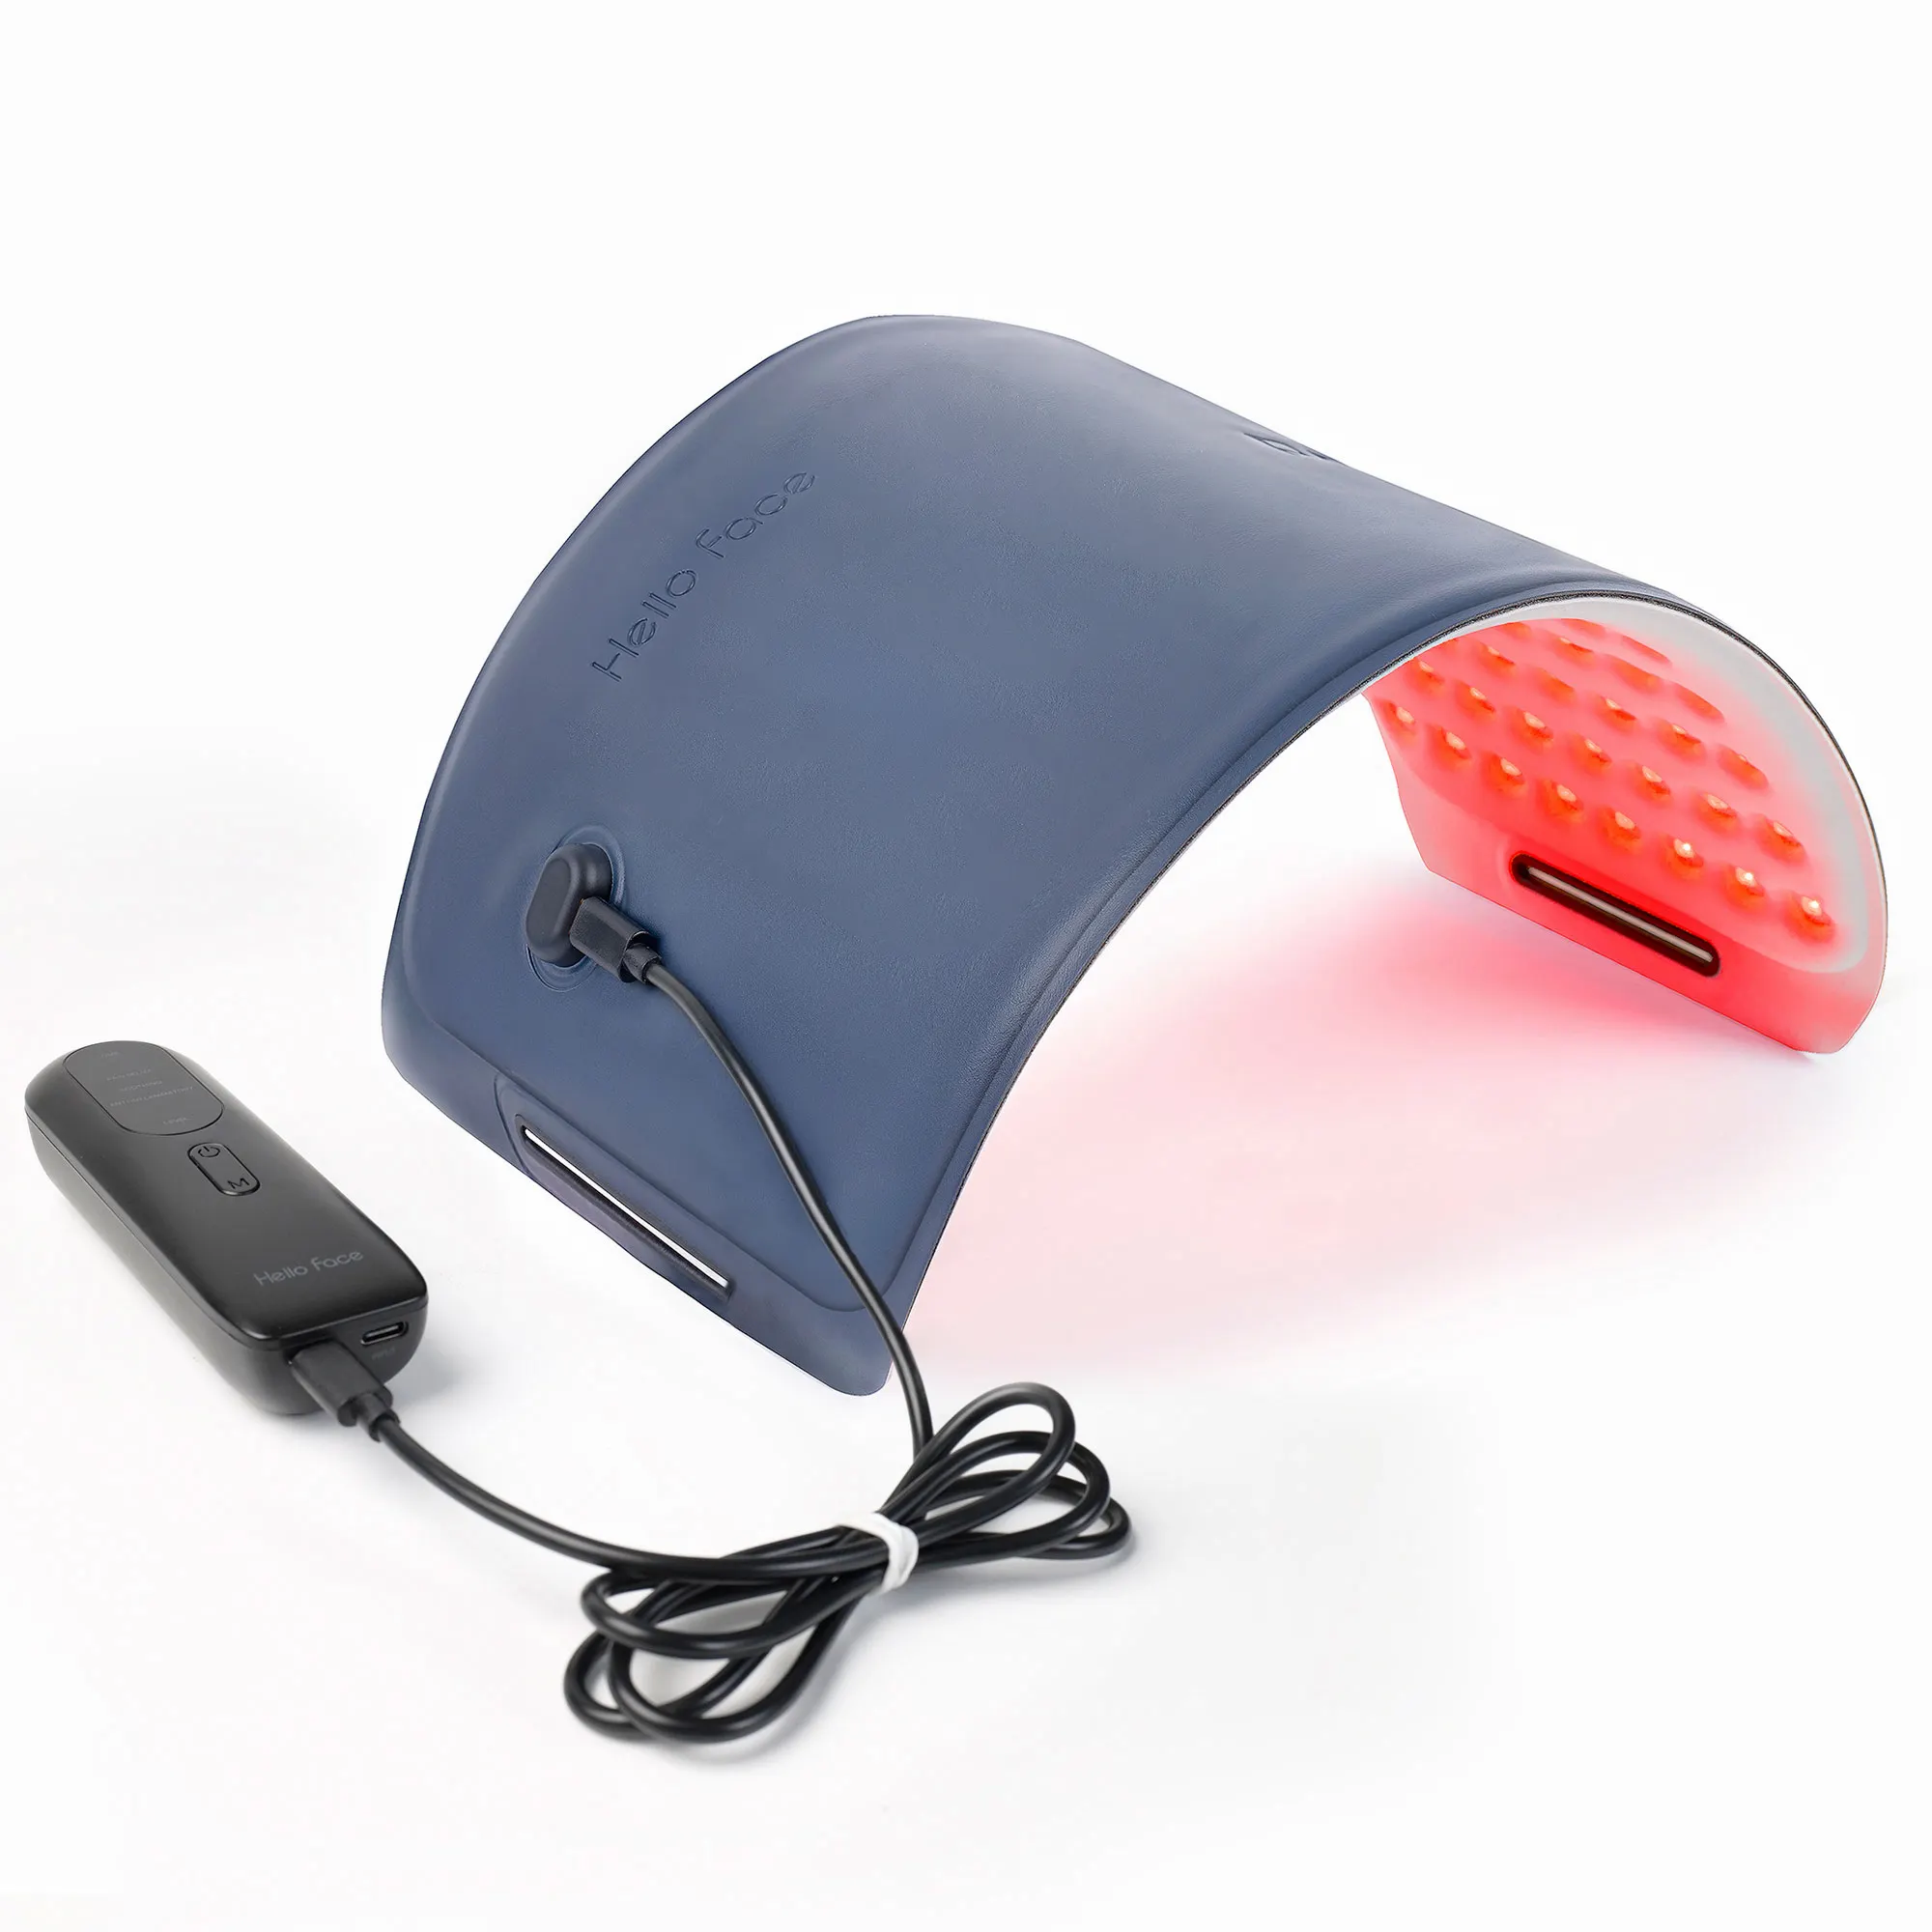 Près de l'infrarouge LED thérapie Pad Redlight thérapie ceinture dos soulagement de la douleur lumière rouge thérapie ceinture Wrap Matbelt